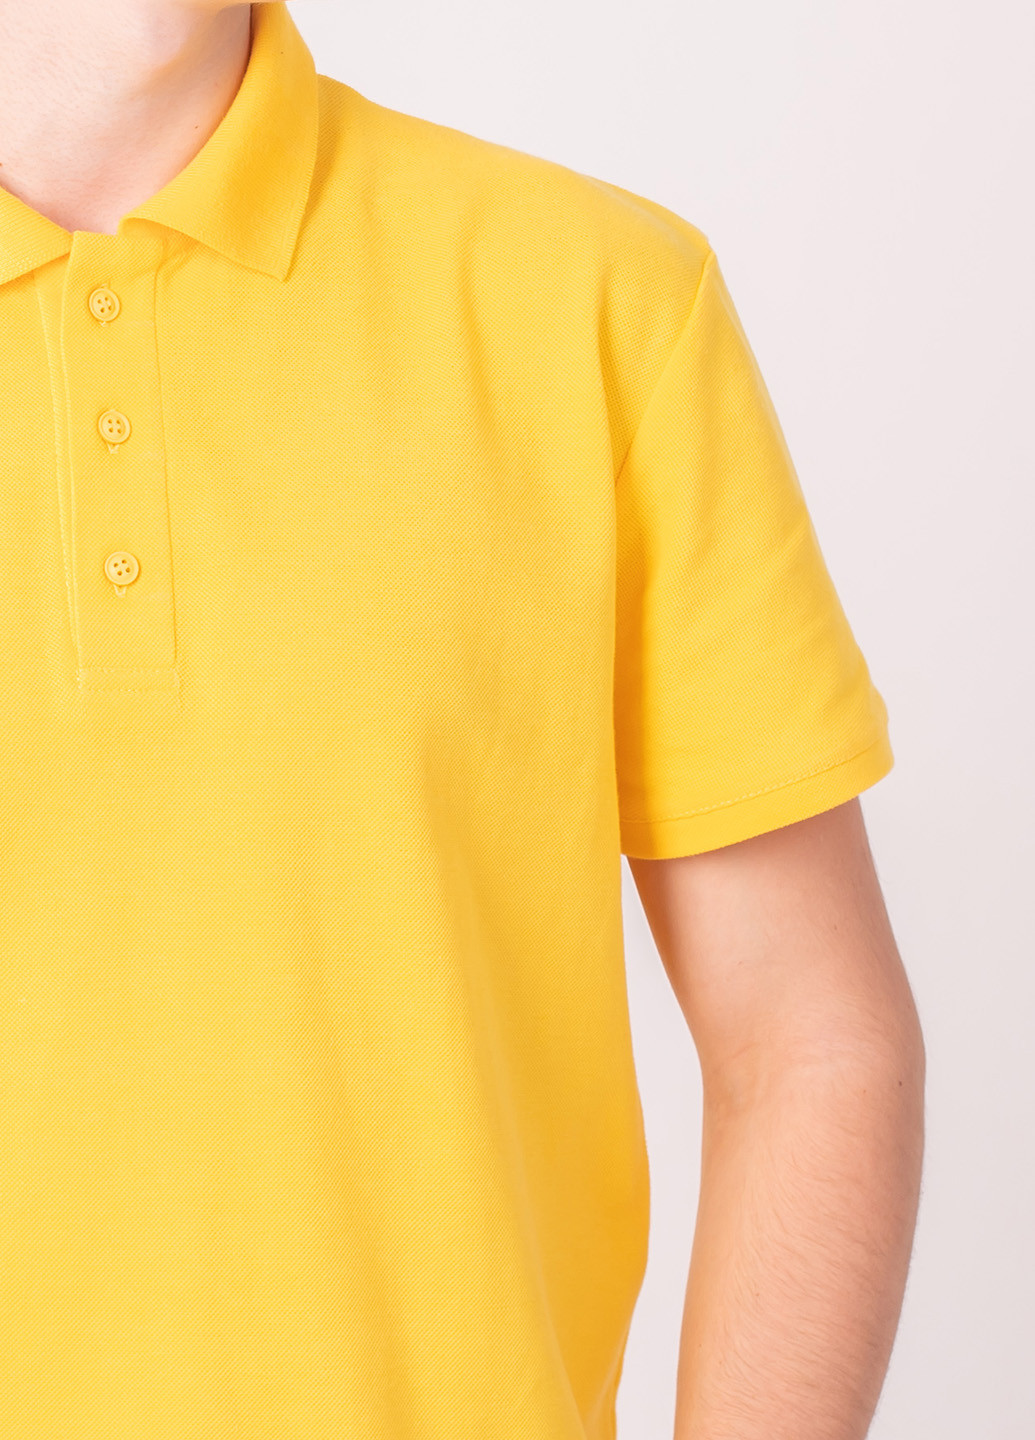 Желтая футболка-футболка поло чоловіча для мужчин TvoePolo однотонная